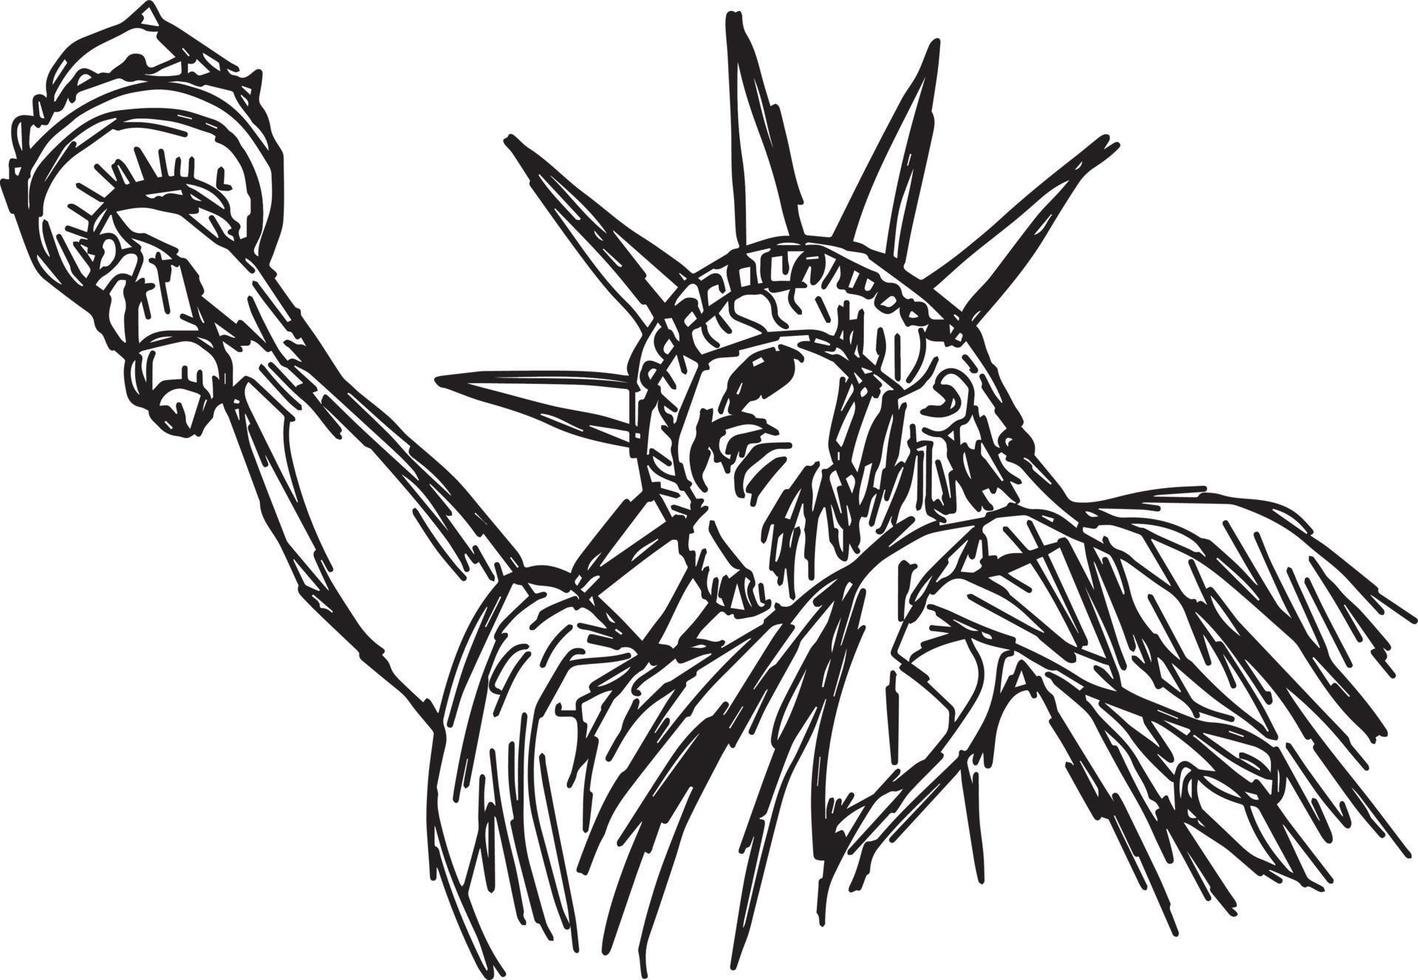 statua della libertà - illustrazione vettoriale schizzo disegnato a mano